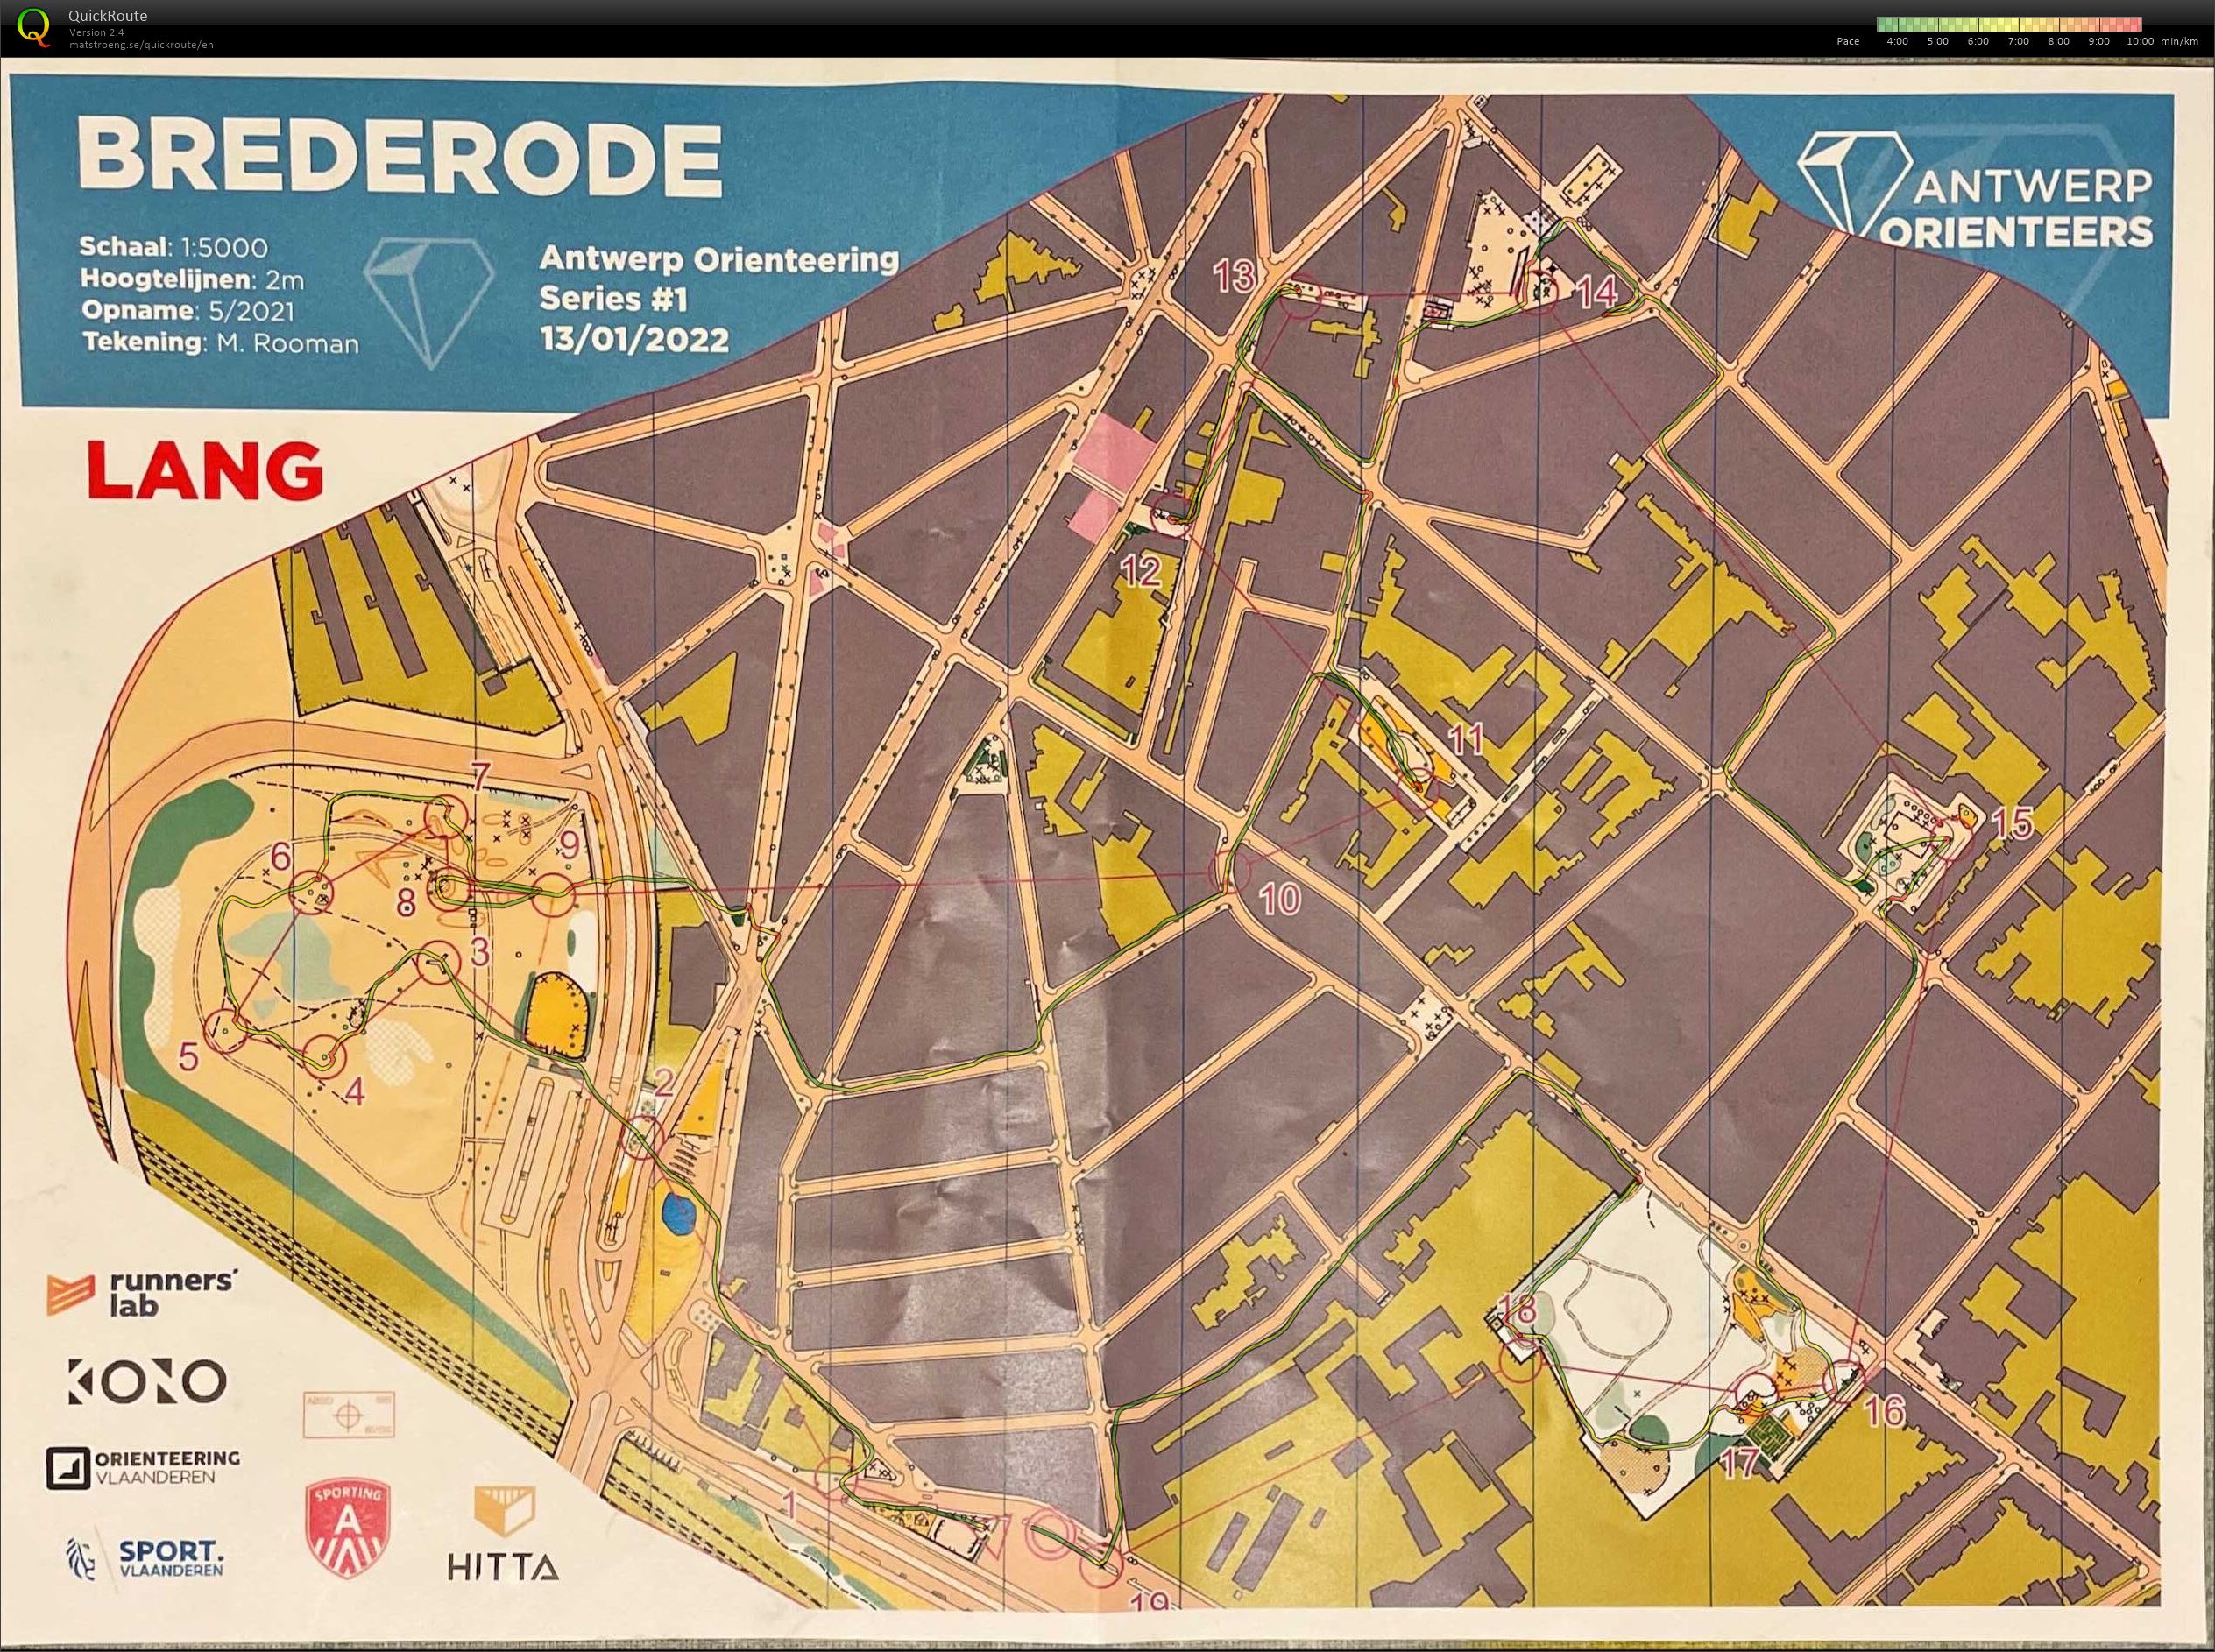 Antwerp Orienteering Series - Brederode - Lang (2022-01-13)